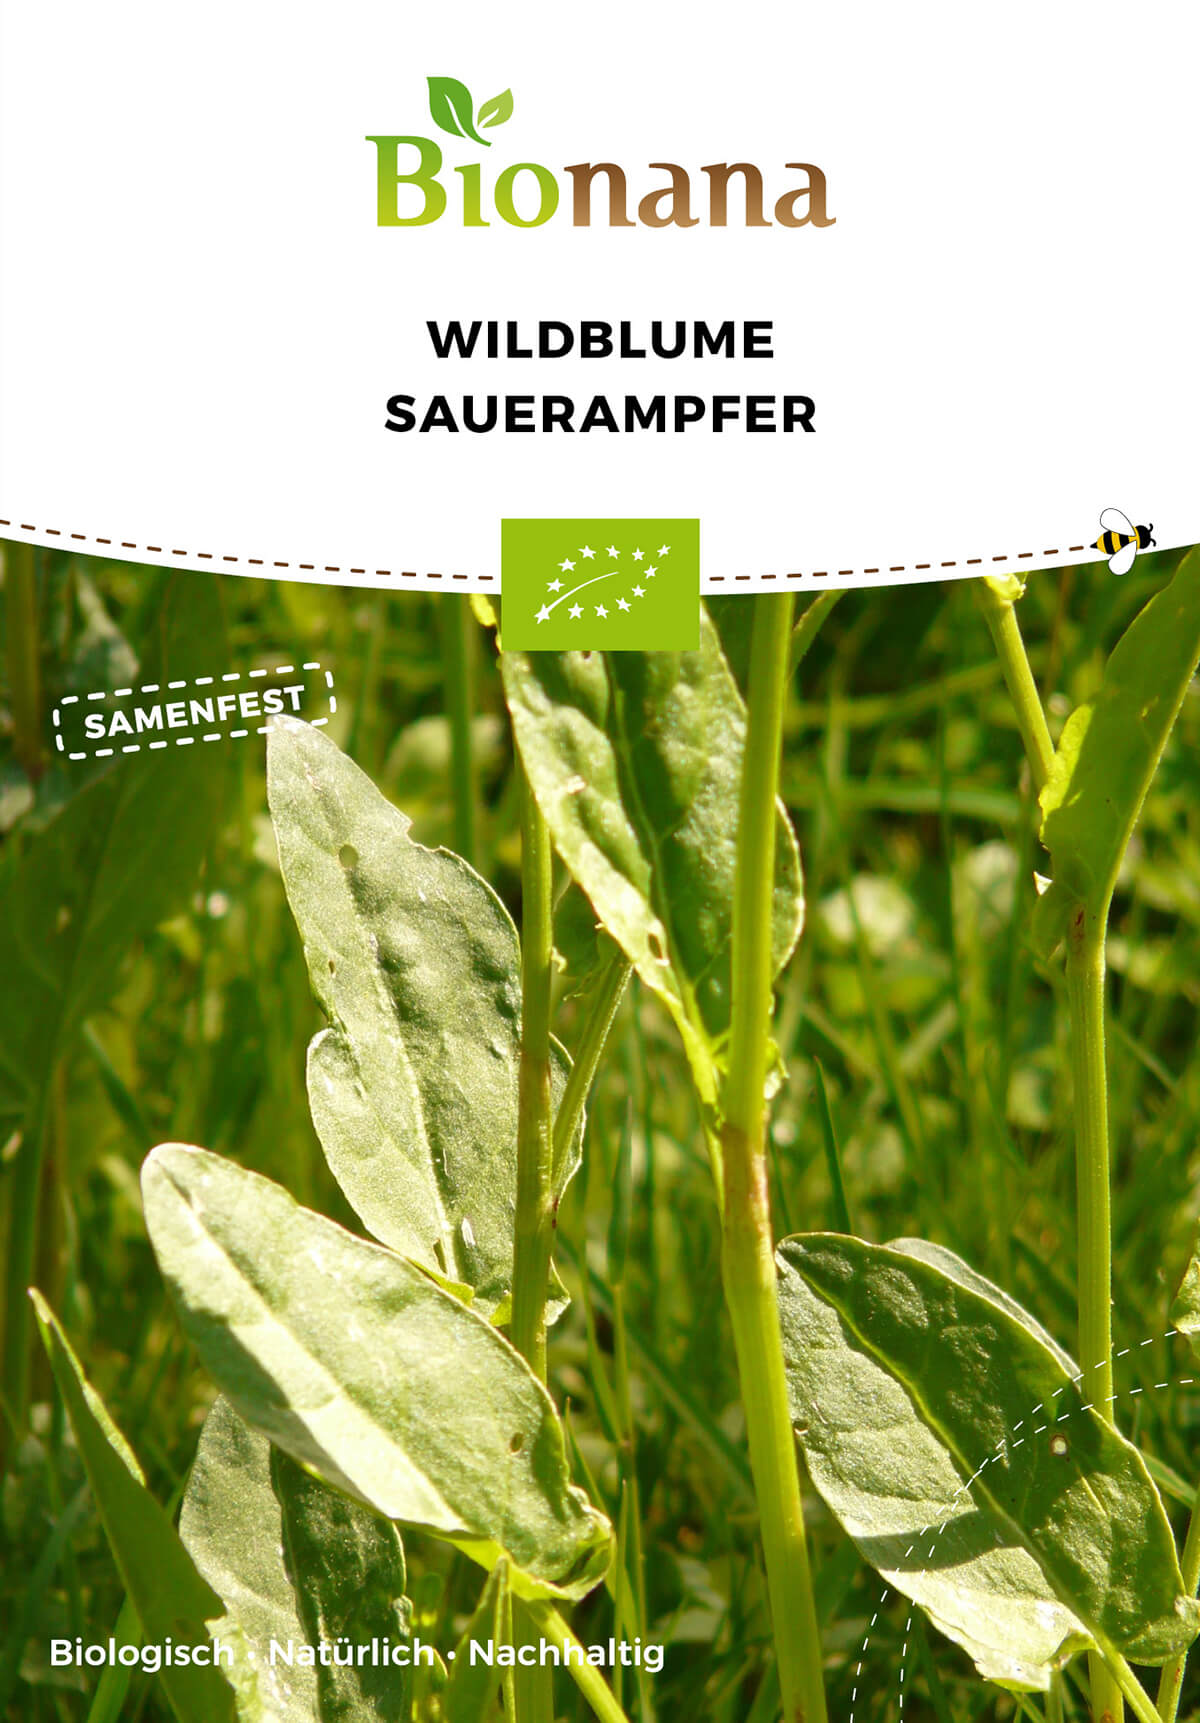 Wildblume Sauerampfer | BIO Wildblumensamen von Bionana